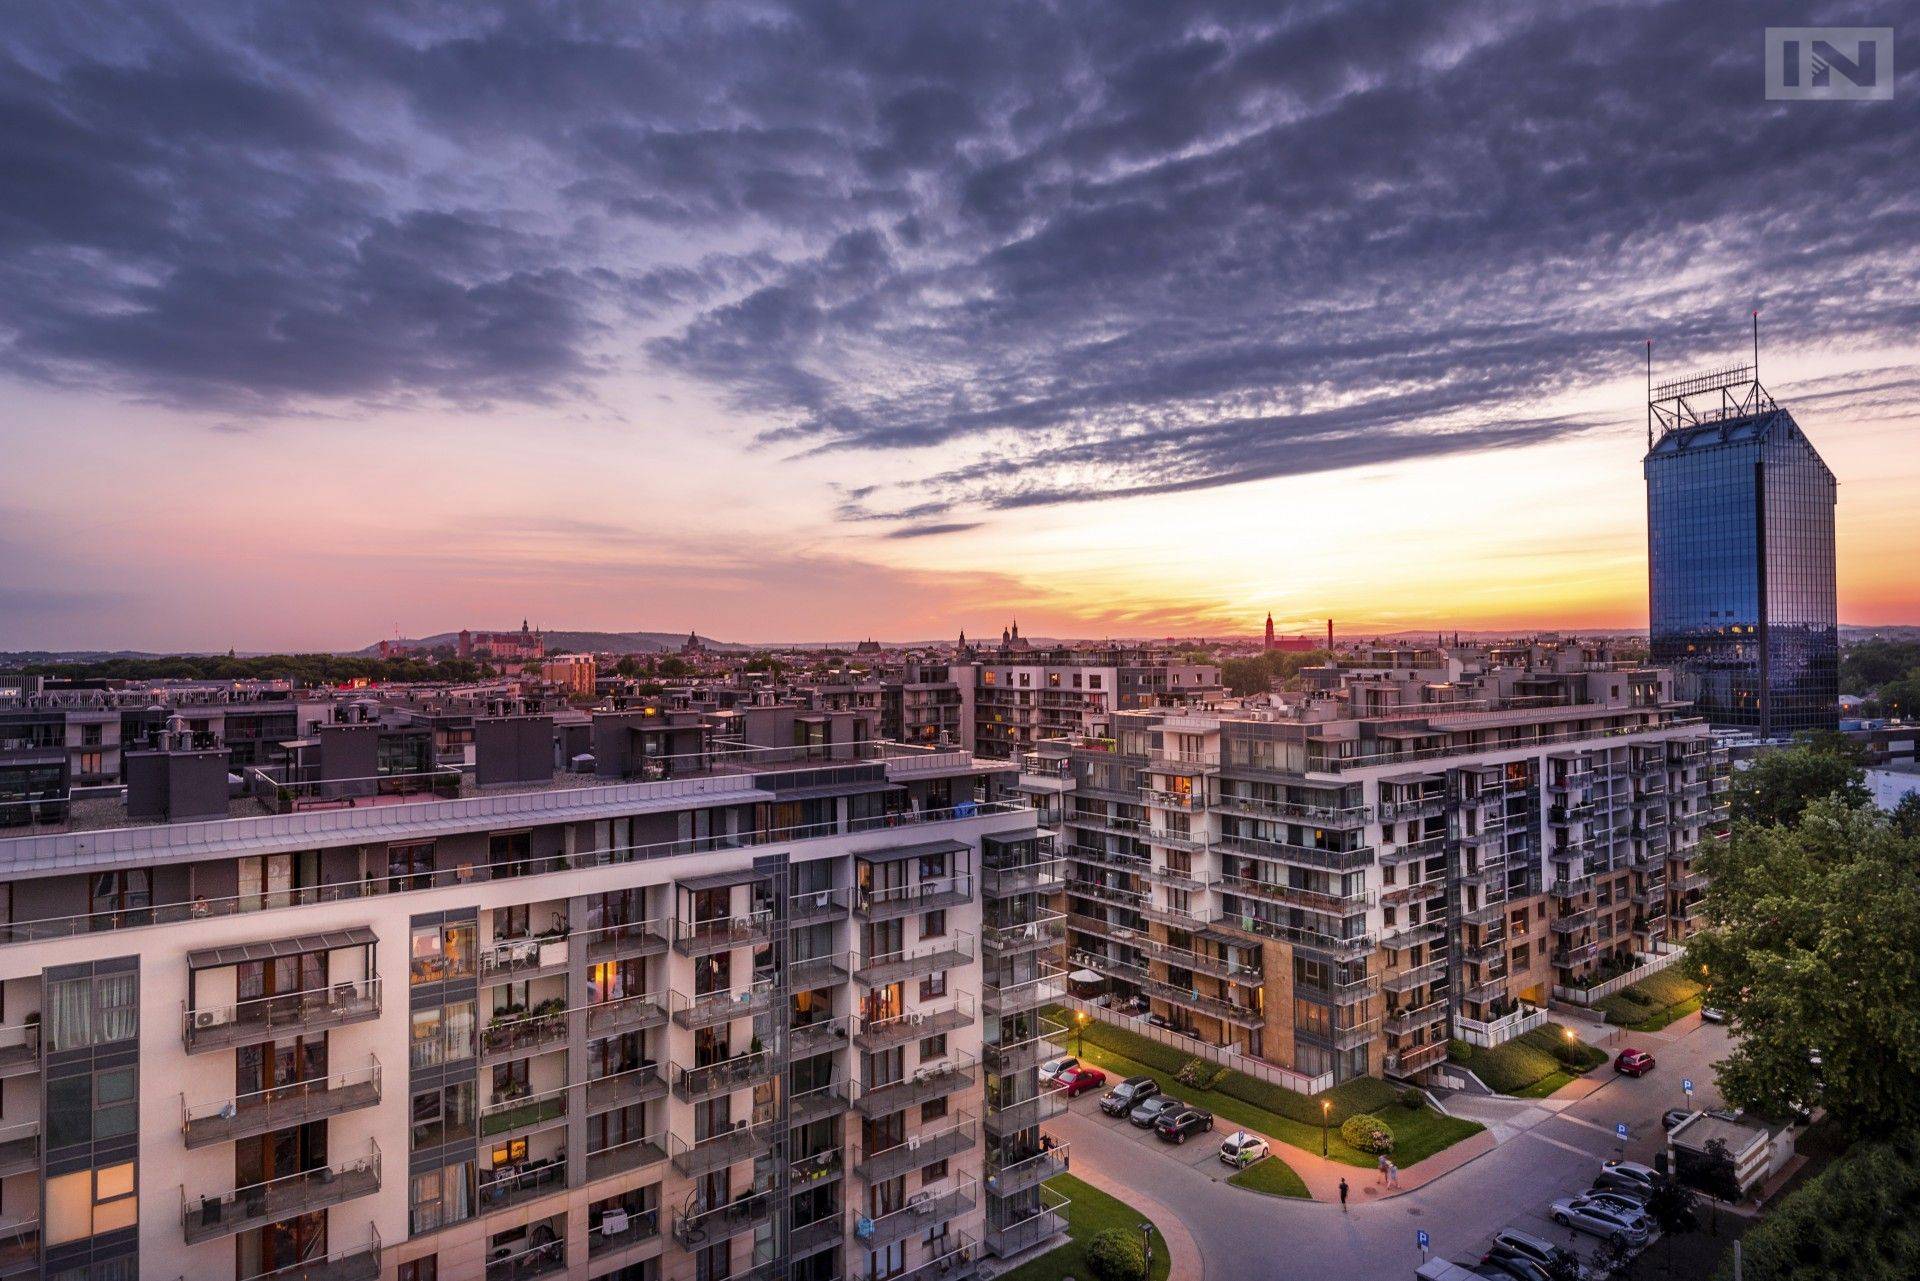 W Krakowie ceny mieszkań ostro w górę, psychologiczna bariera przekroczona